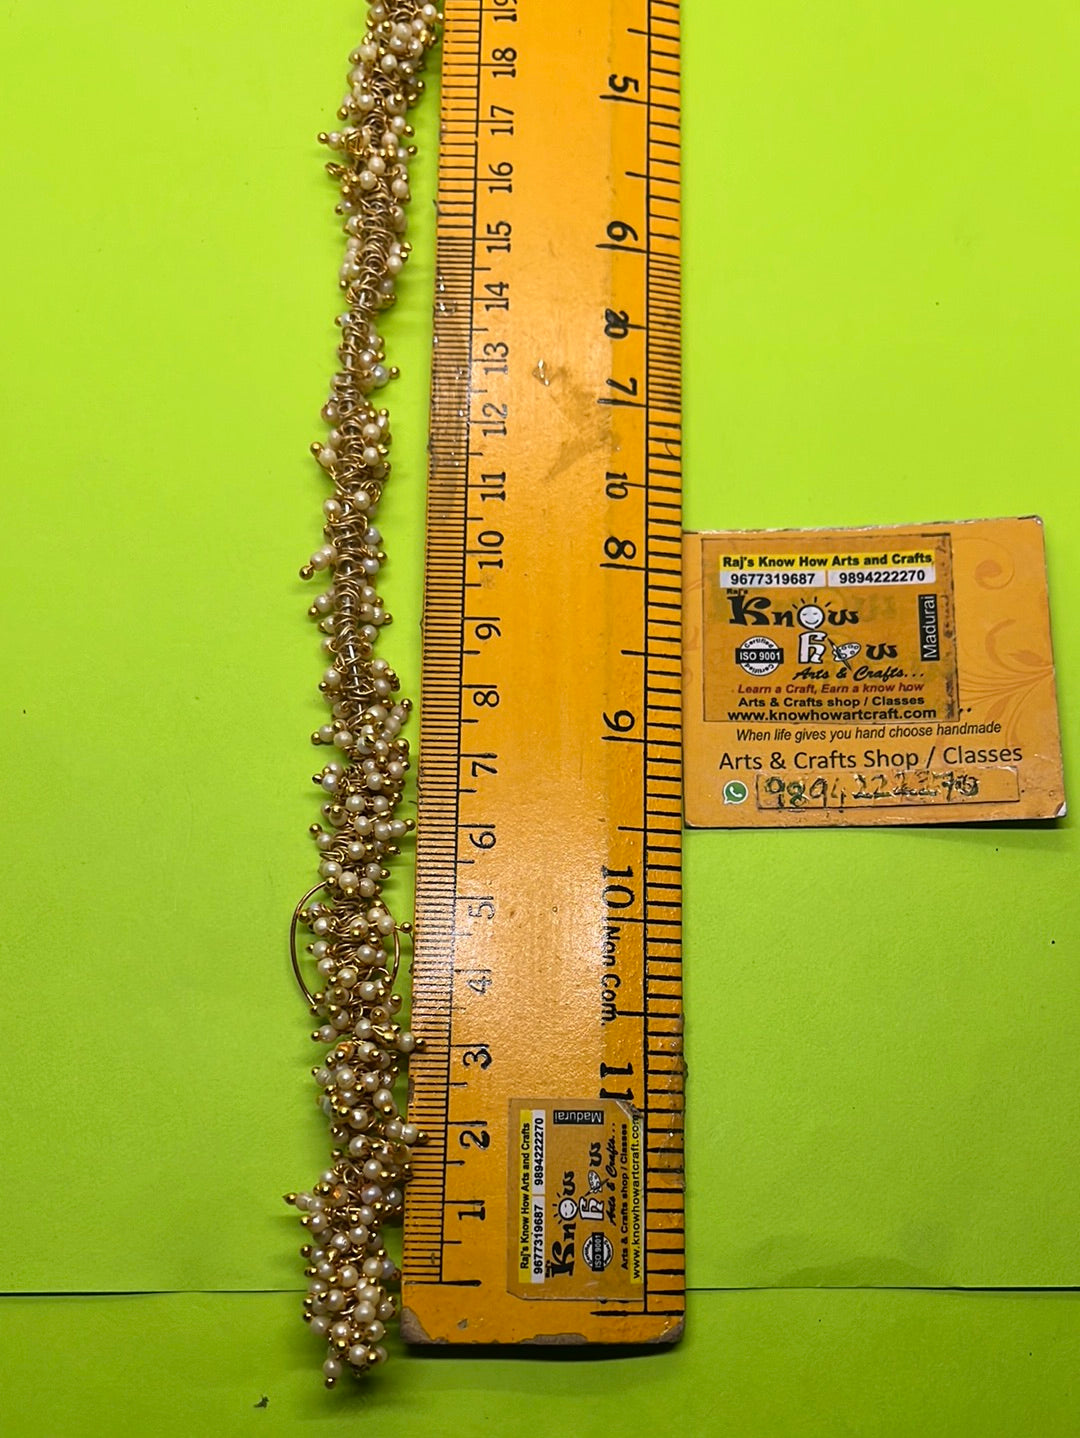 2mm Lorial Beads jhumki